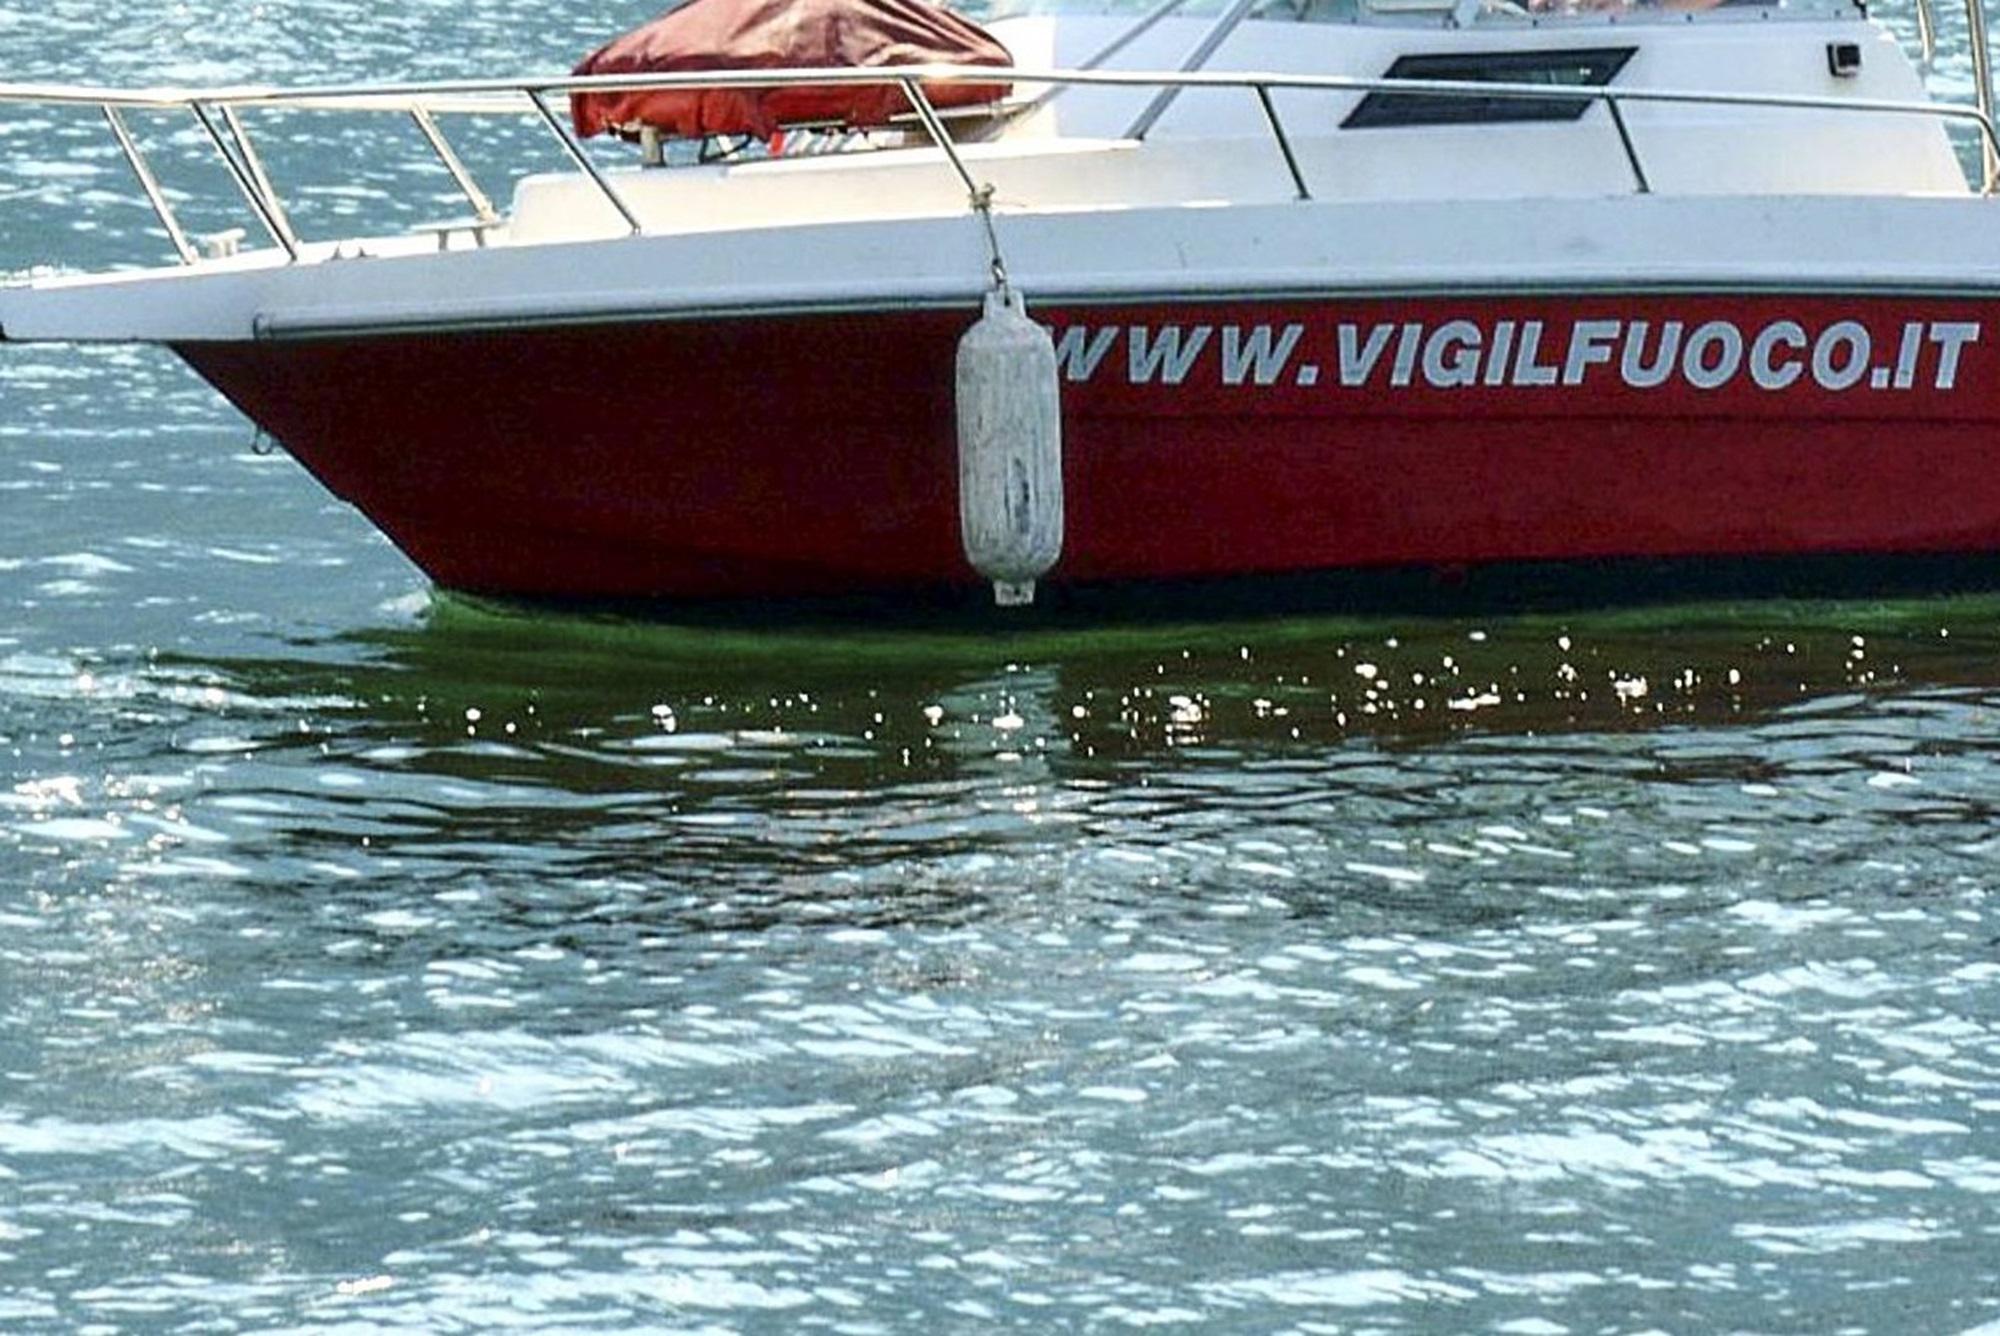 Lago di Como - noleggiano barca per fare il bagno al largo: lui muore a 22 anni - salvata la ragazza